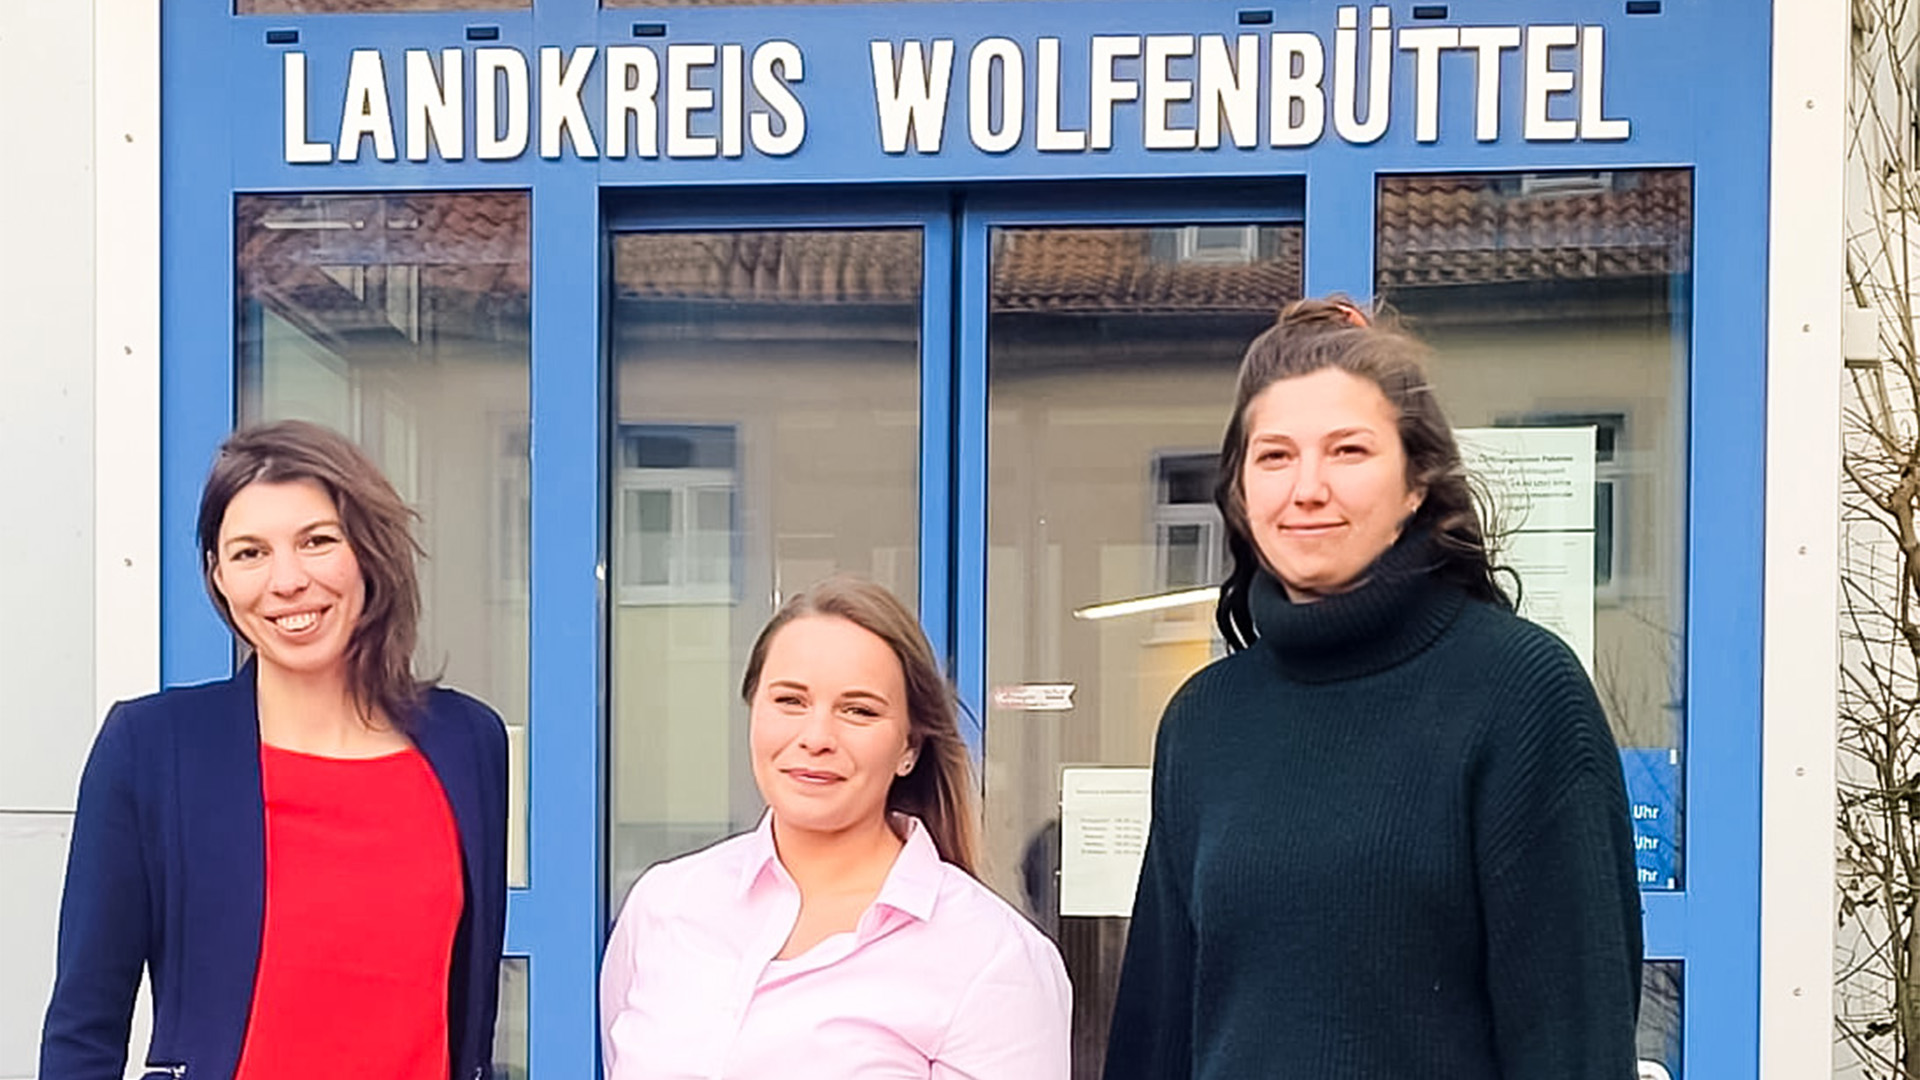 Drei Frauen stehen vor der Eingangstür des Landkreises Wolfenbüttel, dessen Schriftzug über der Tür zu erkennen ist.